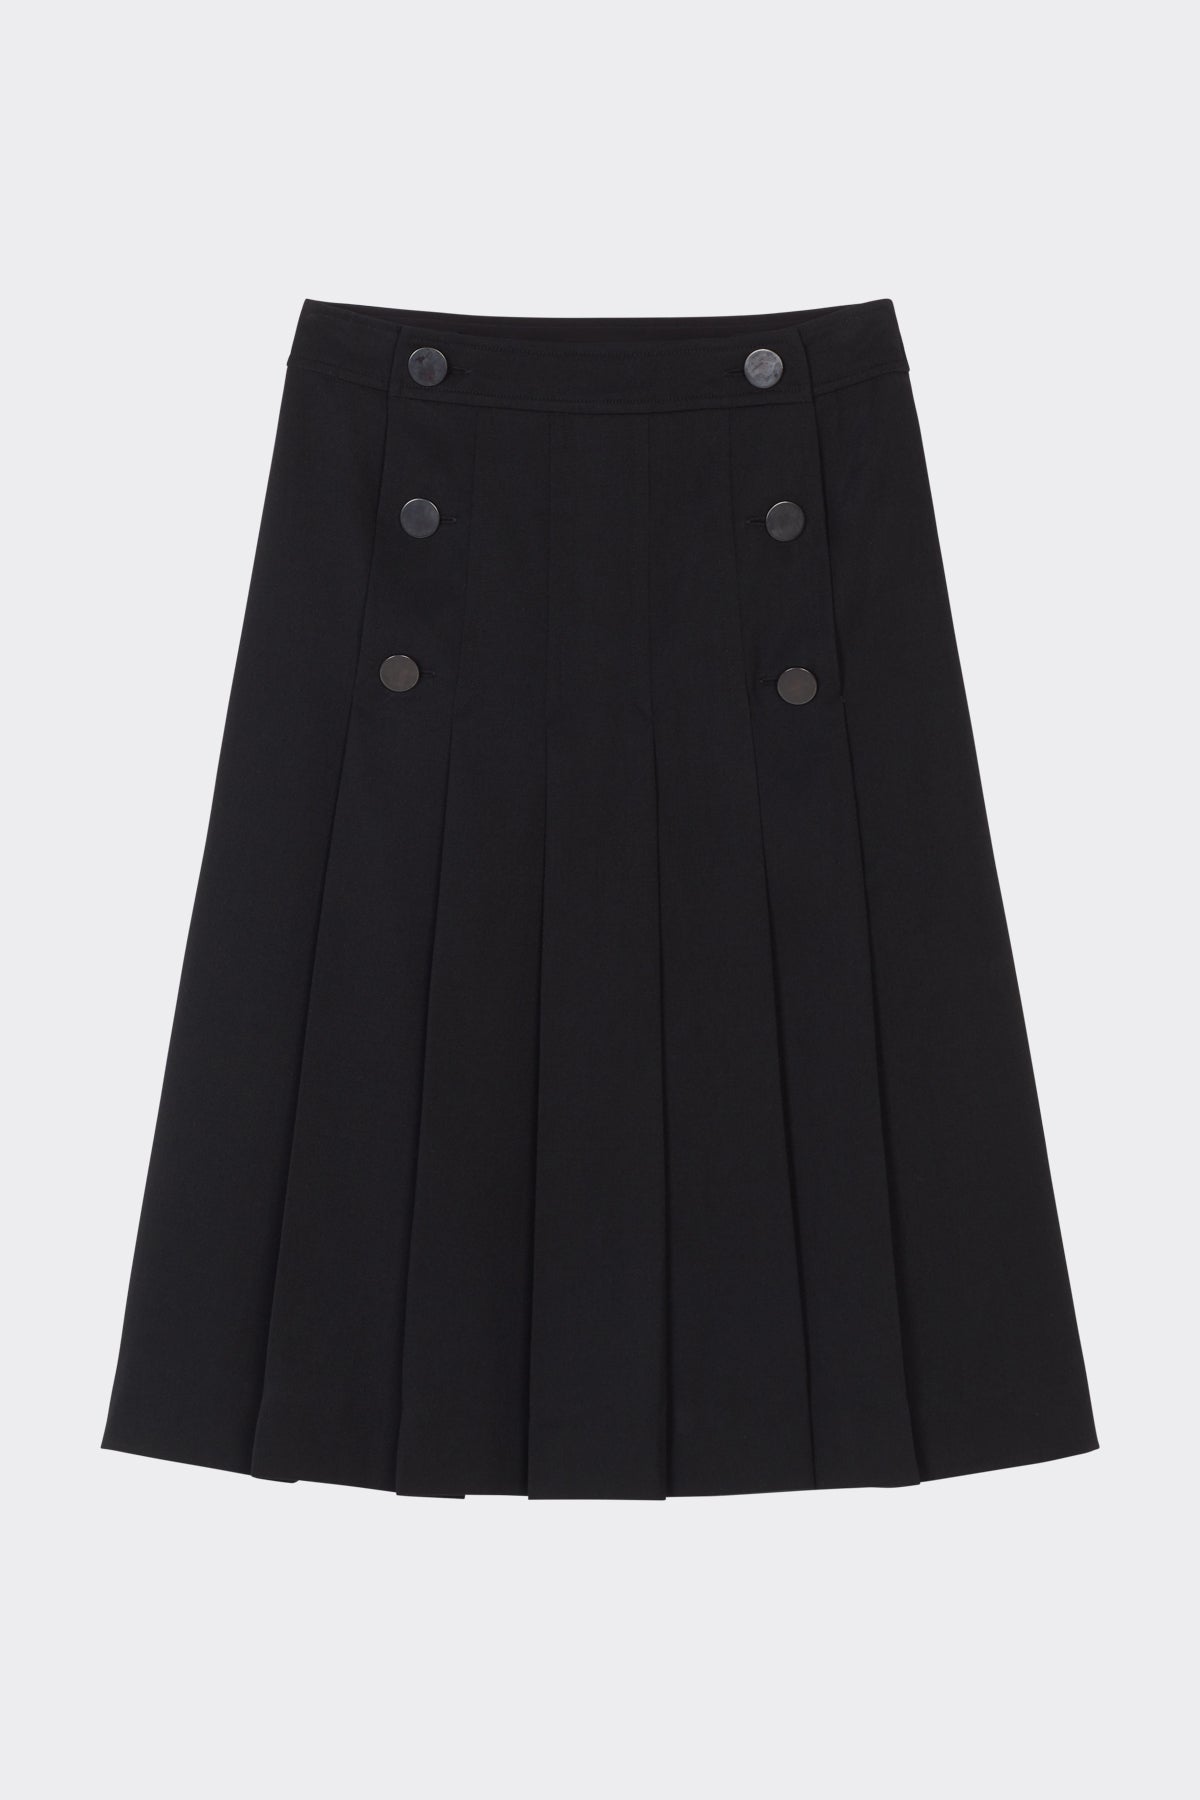 Cheri Skirt in Black | Noon By Noor